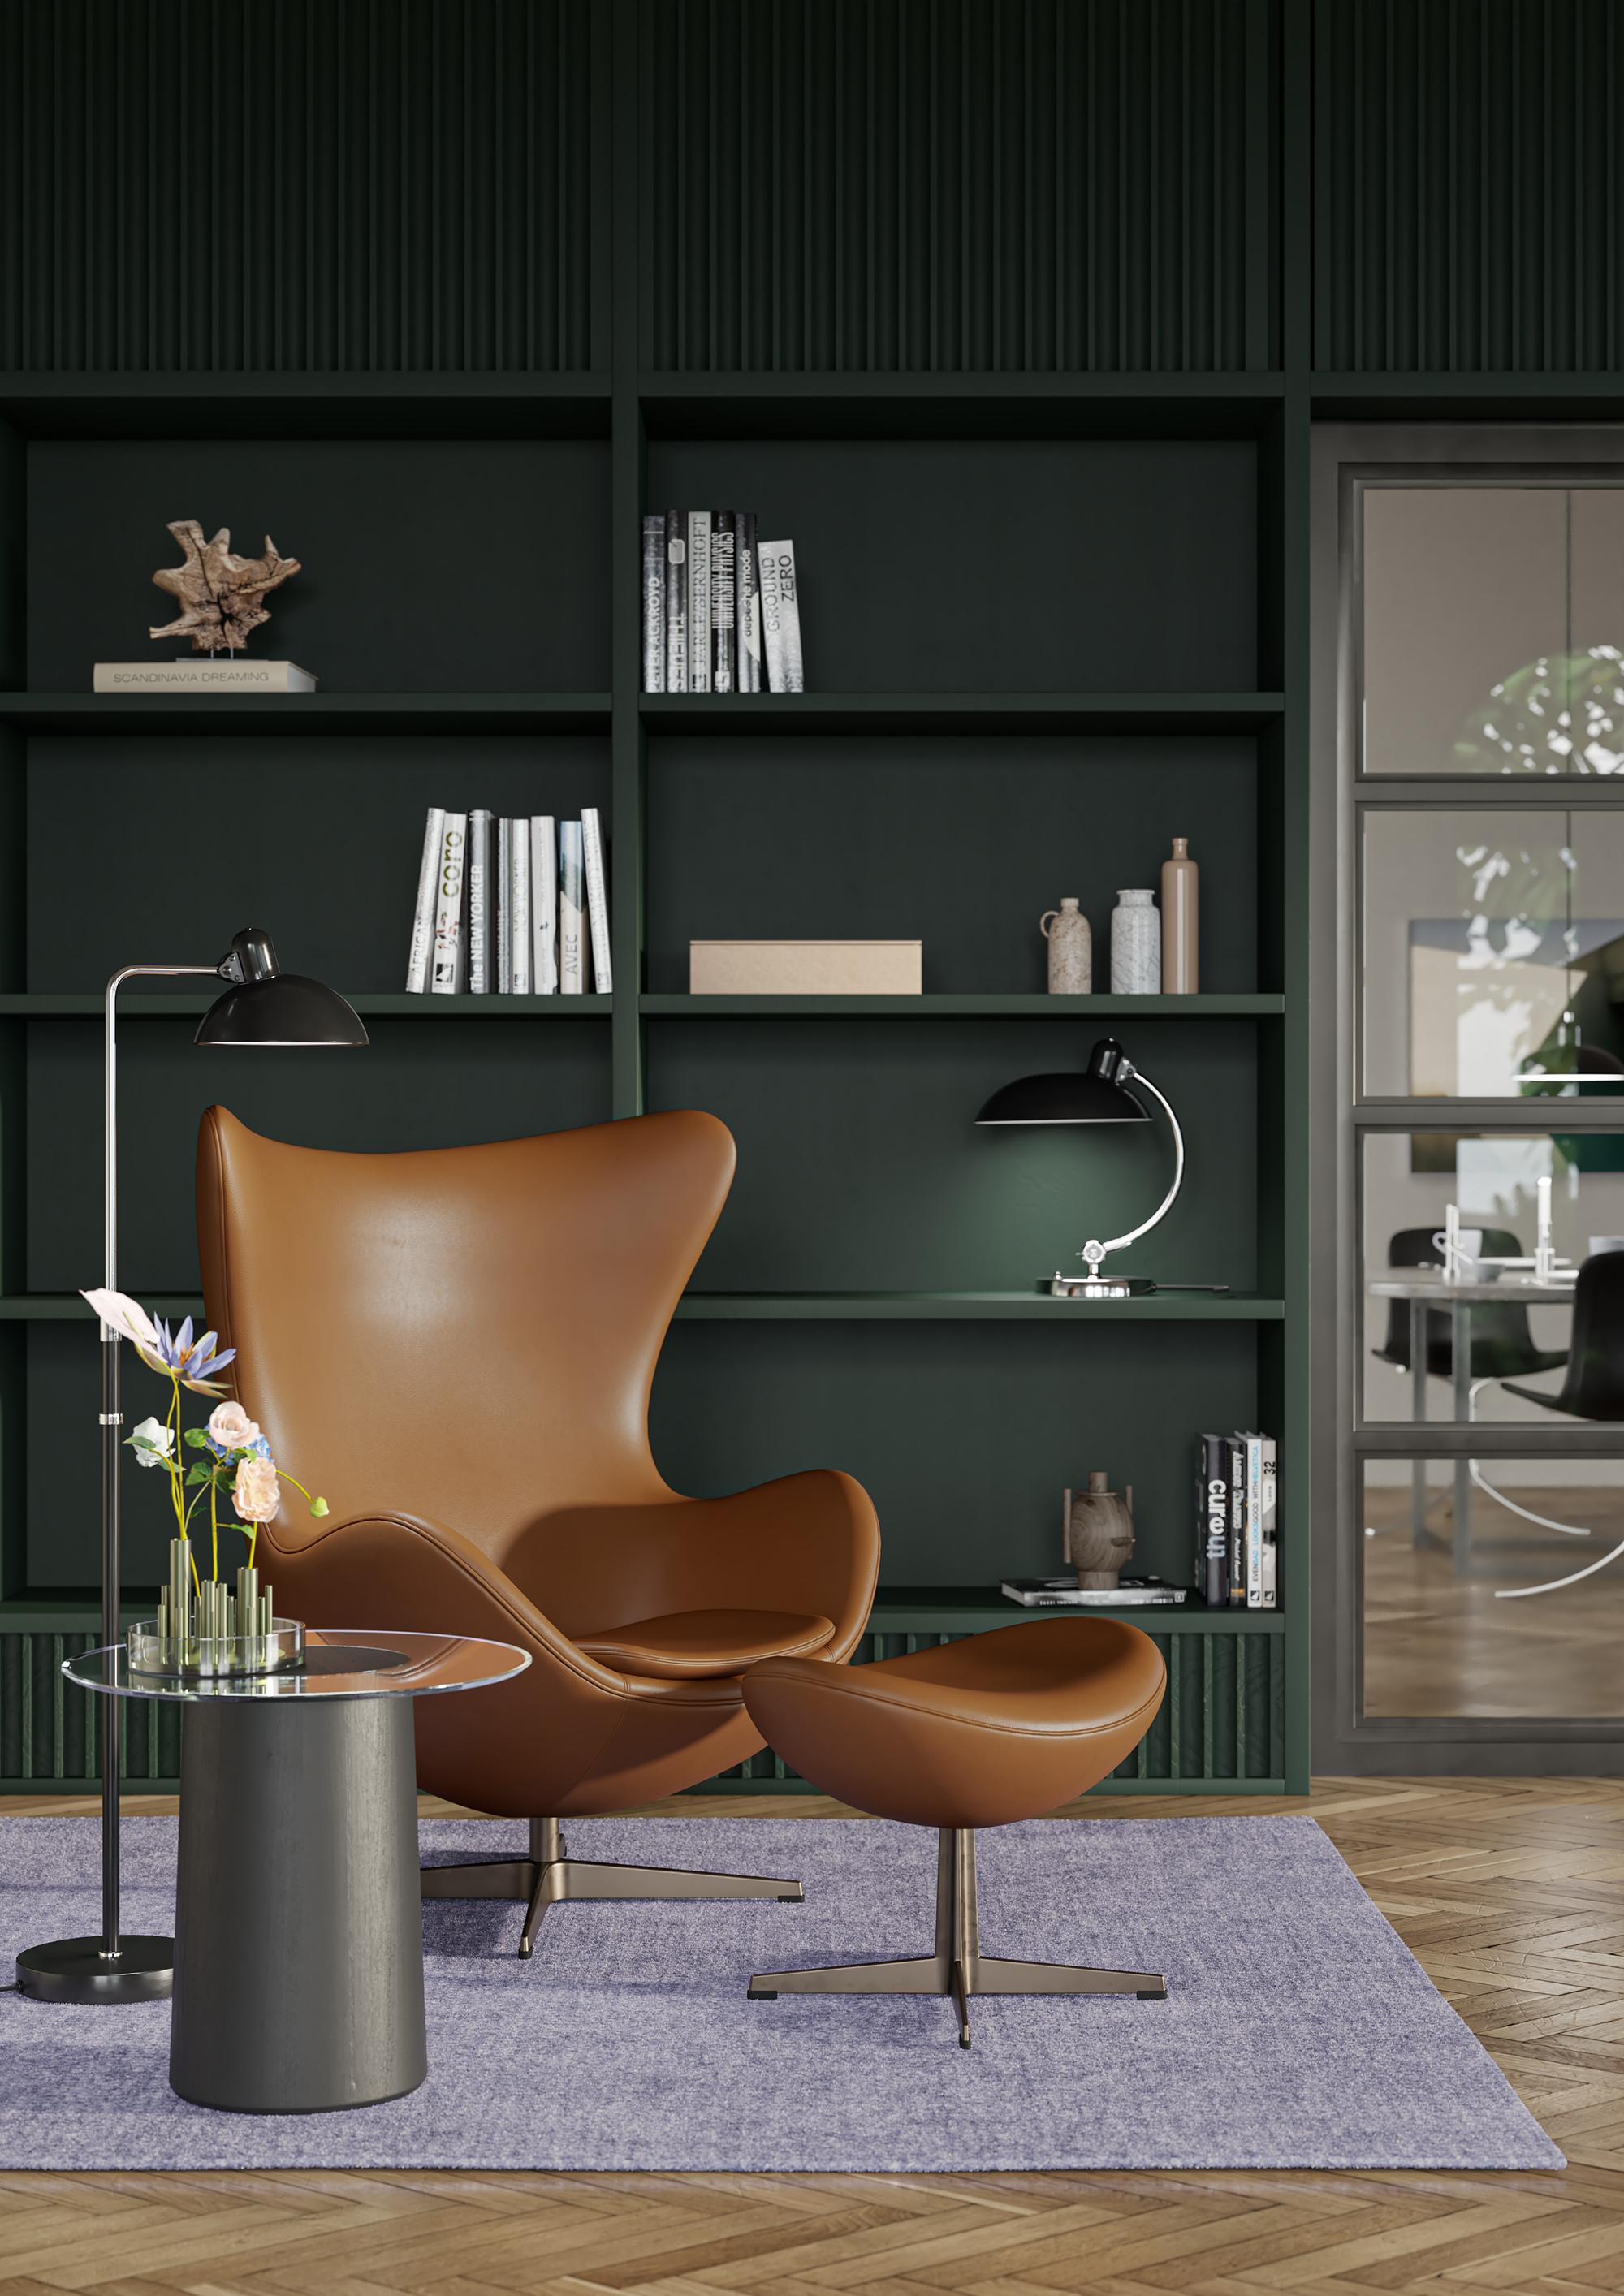 Arne Jacobsen 'Egg' Stuhl für Fritz Hansen in Lederpolsterung (Kat. 3).

Fritz Hansen wurde 1872 gegründet und ist zum Synonym für legendäres dänisches Design geworden. Die Marke kombiniert zeitlose Handwerkskunst mit einem Schwerpunkt auf